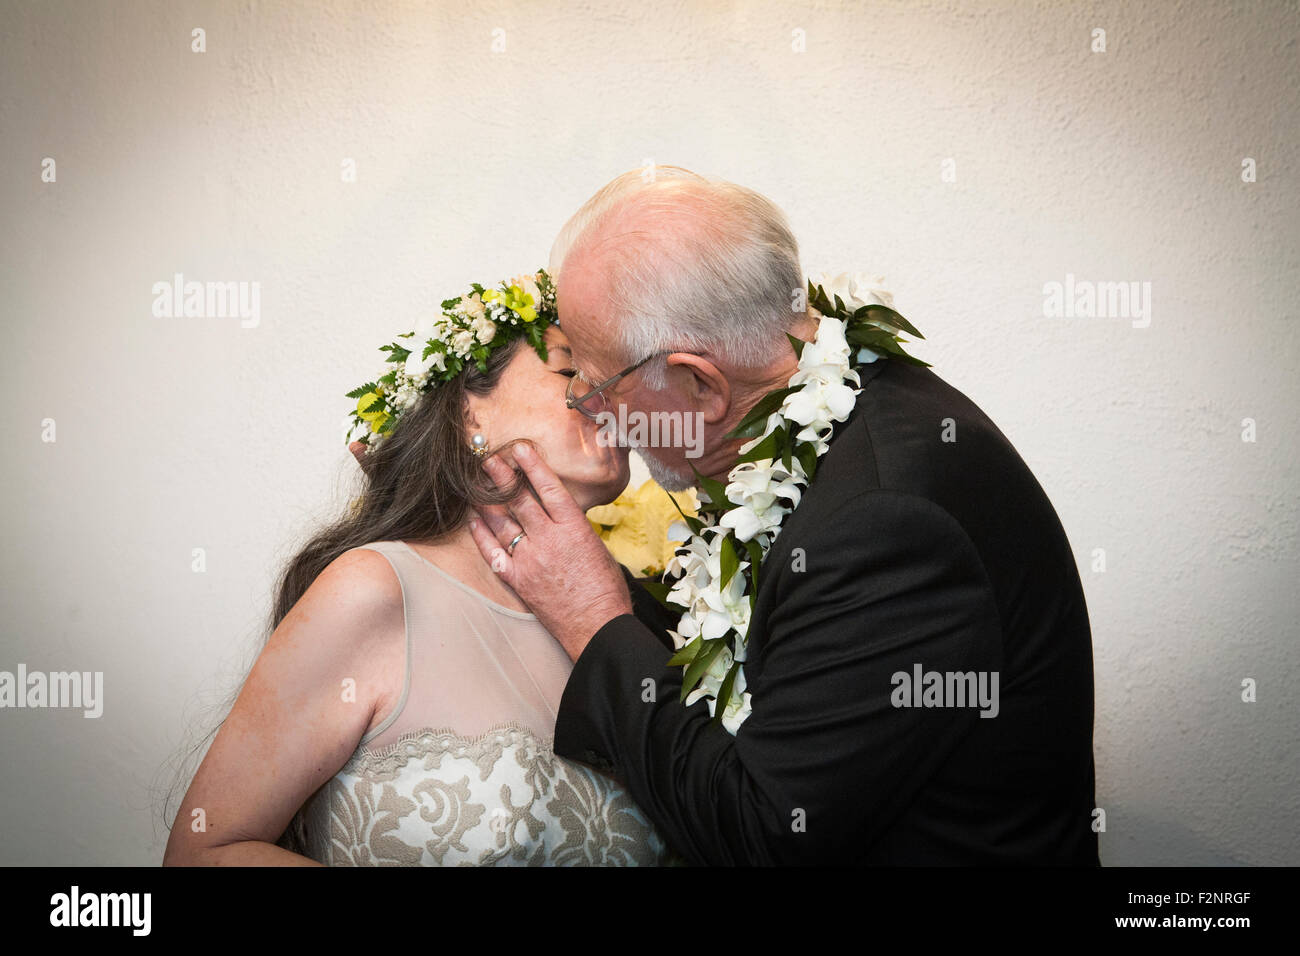 Les jeunes mariés s'embrasser au mariage Banque D'Images